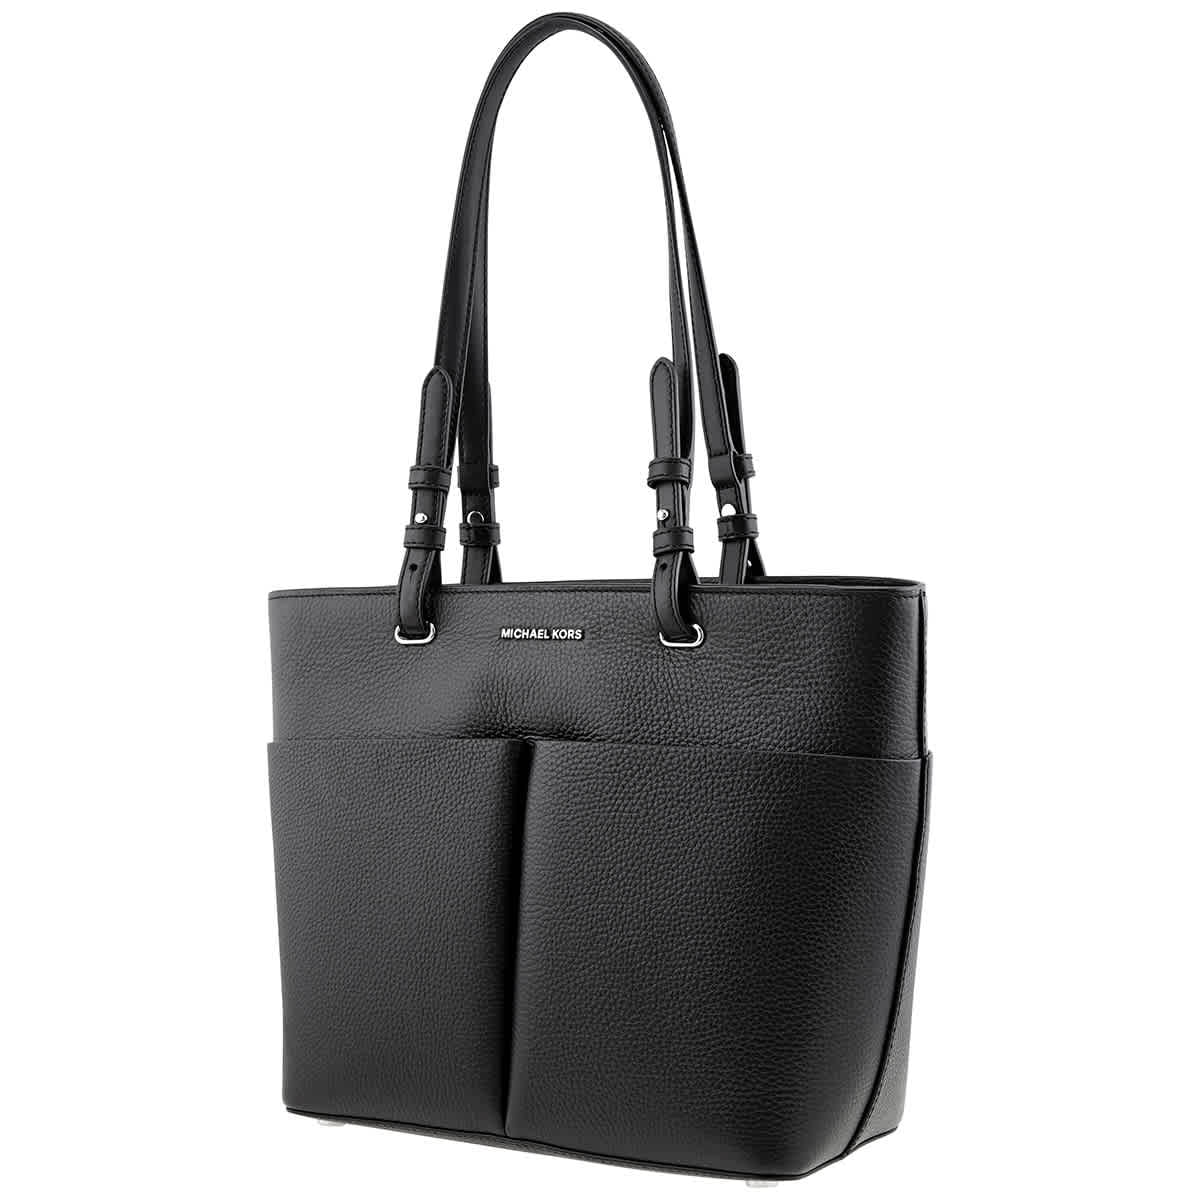 Michael Kors Ladies Sienna Medium Pebbled Leather Satchel - Black  30F1G4SM2L 001 194900726709 - Handbags - Jomashop